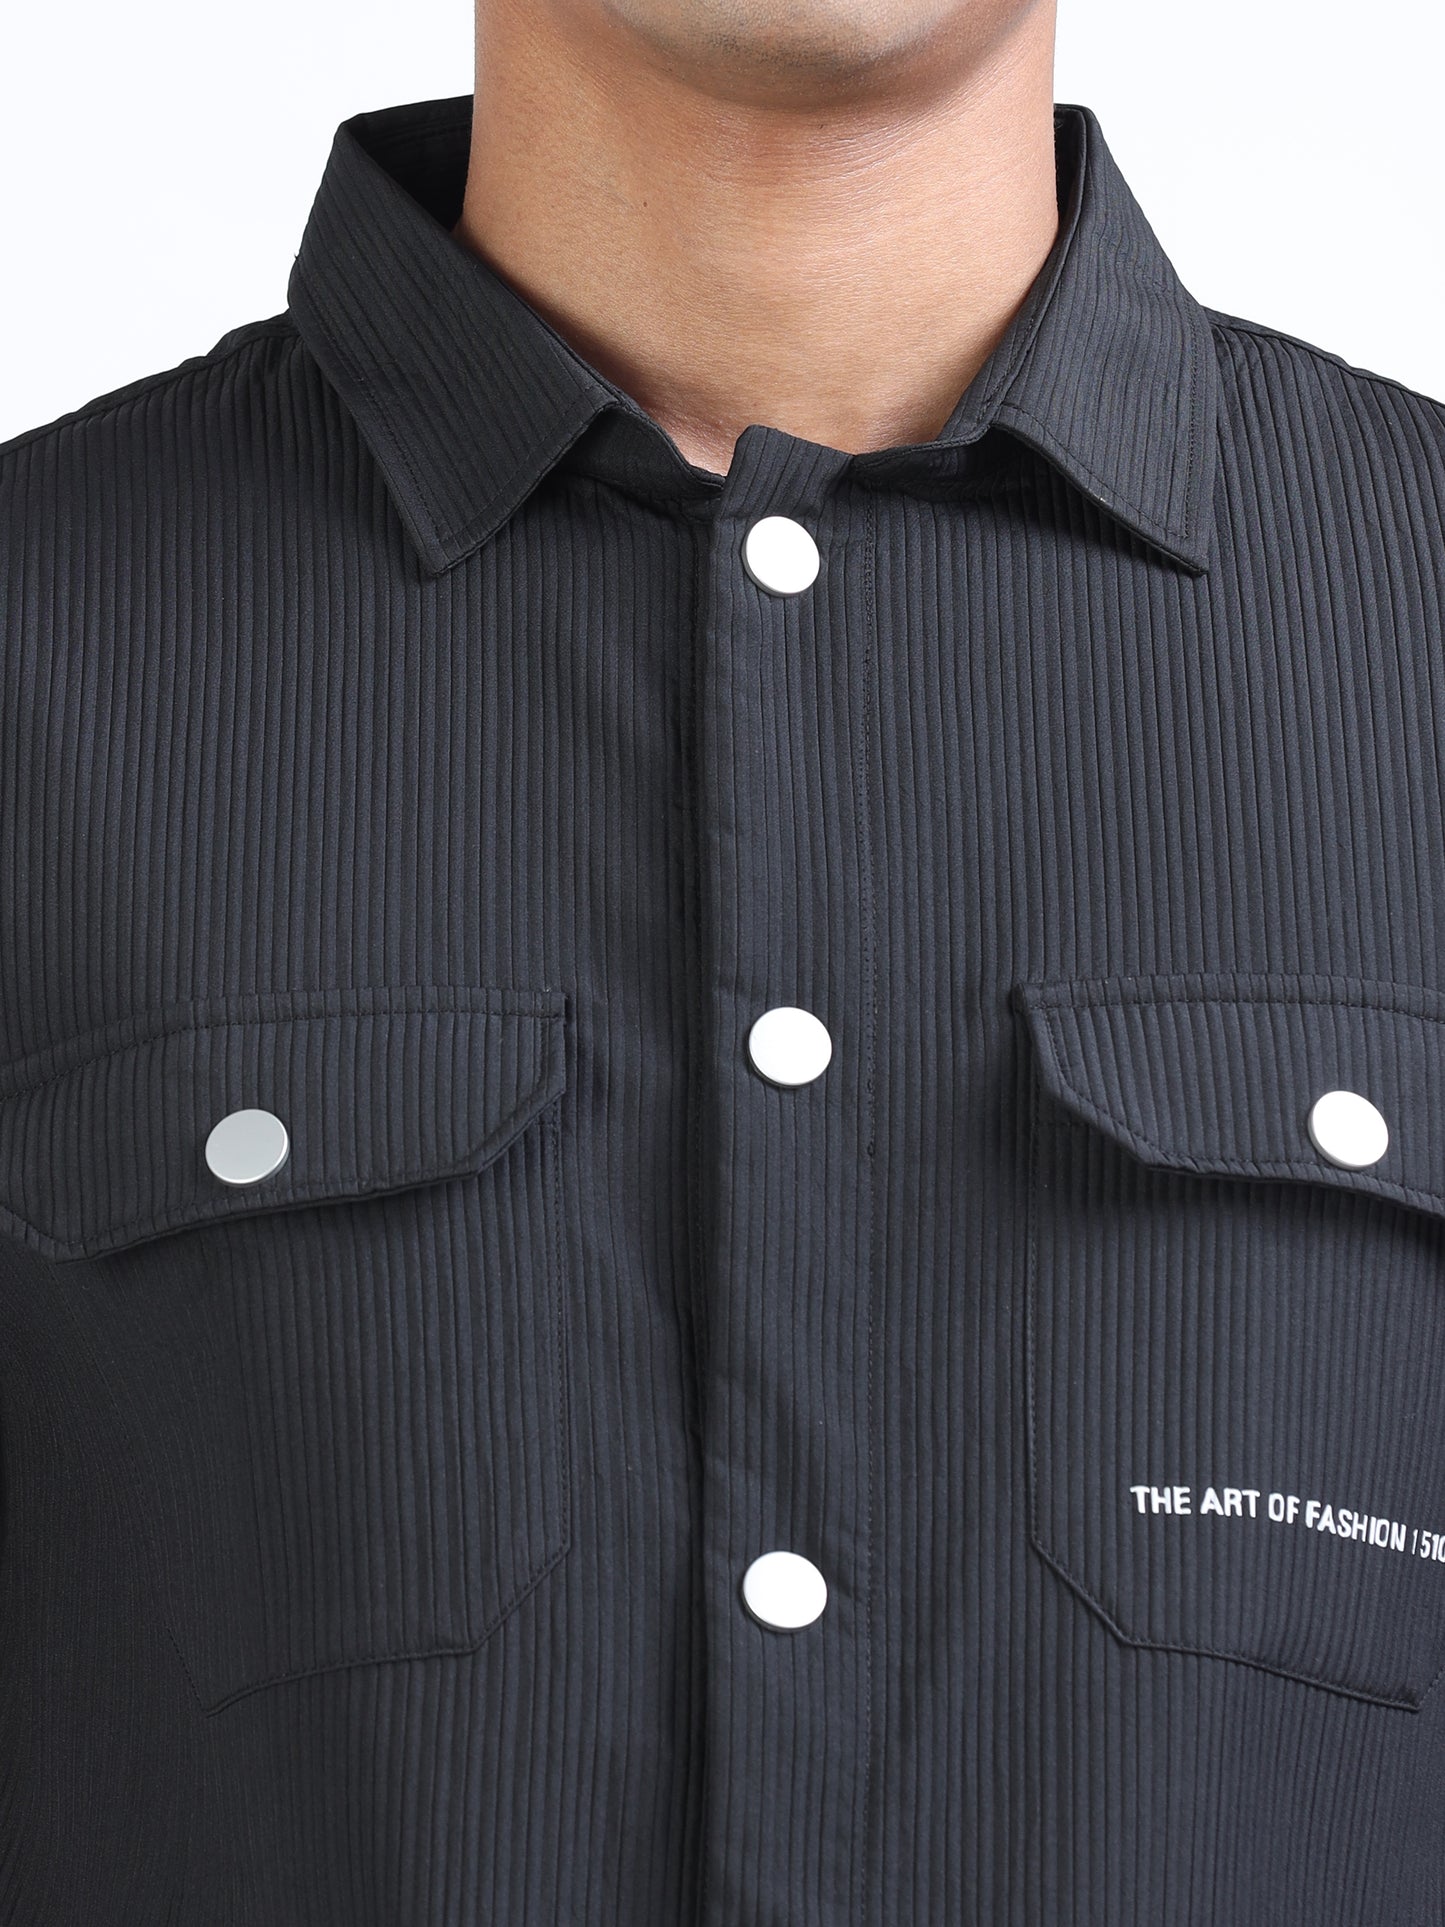 Black Textured Over Shirt for Men 